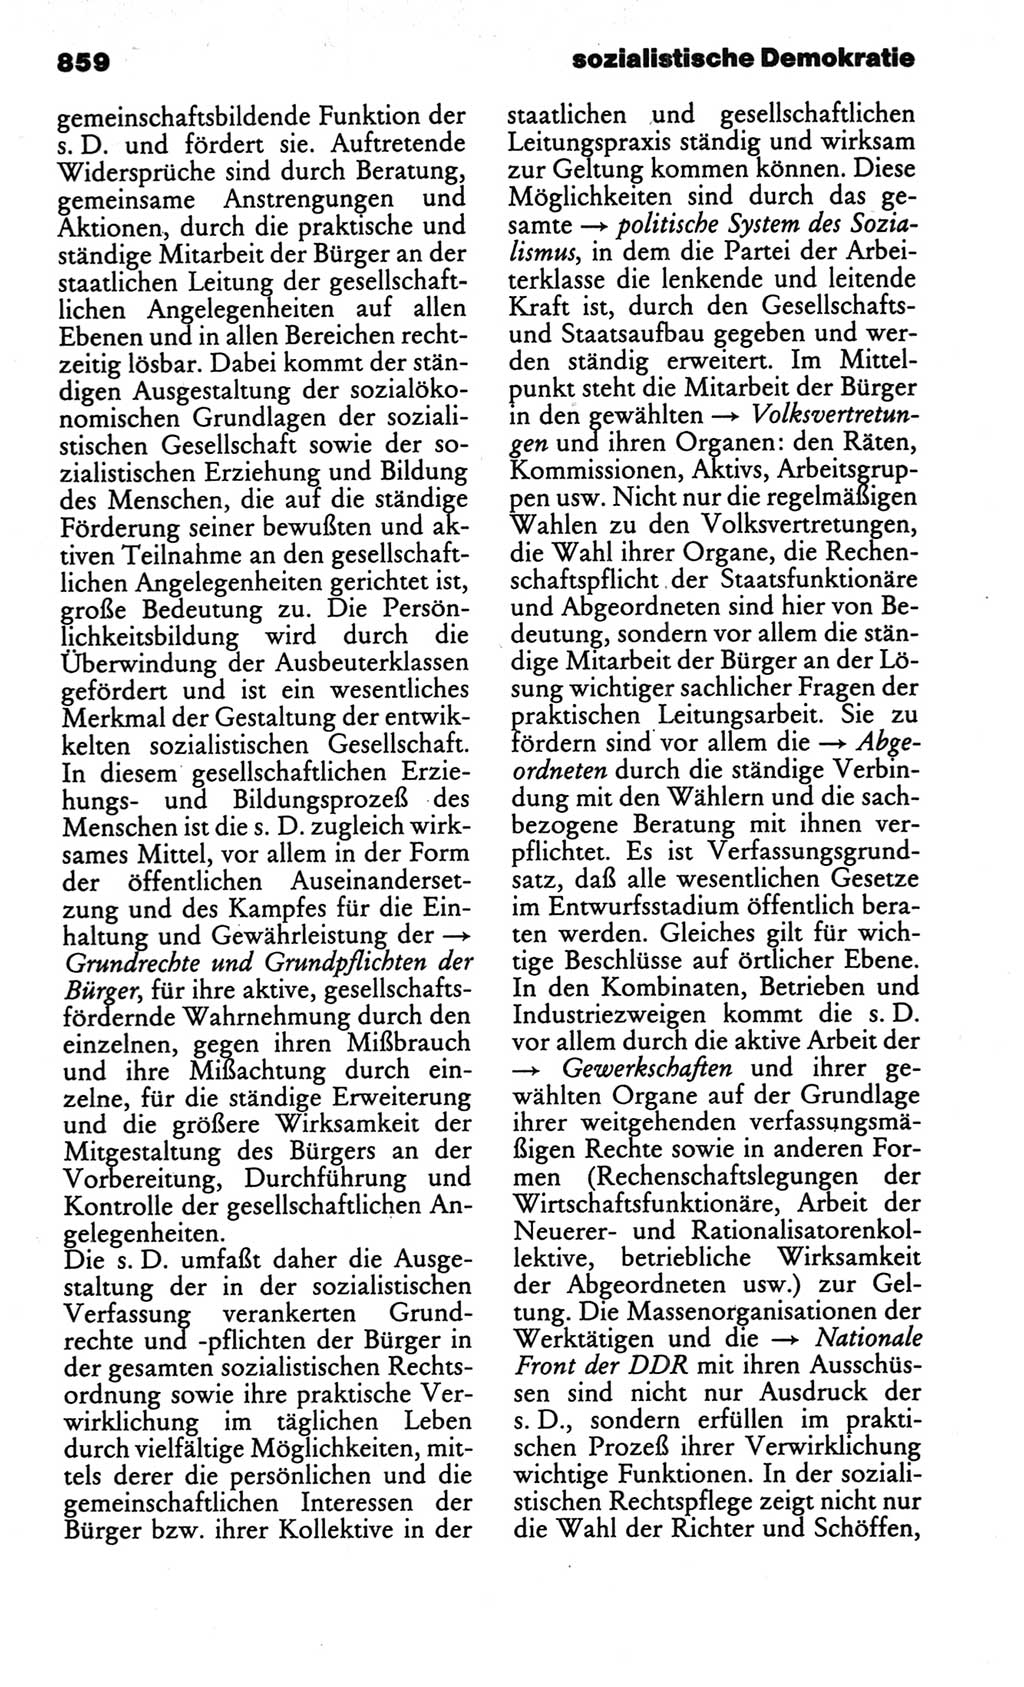 Kleines politisches Wörterbuch [Deutsche Demokratische Republik (DDR)] 1986, Seite 859 (Kl. pol. Wb. DDR 1986, S. 859)